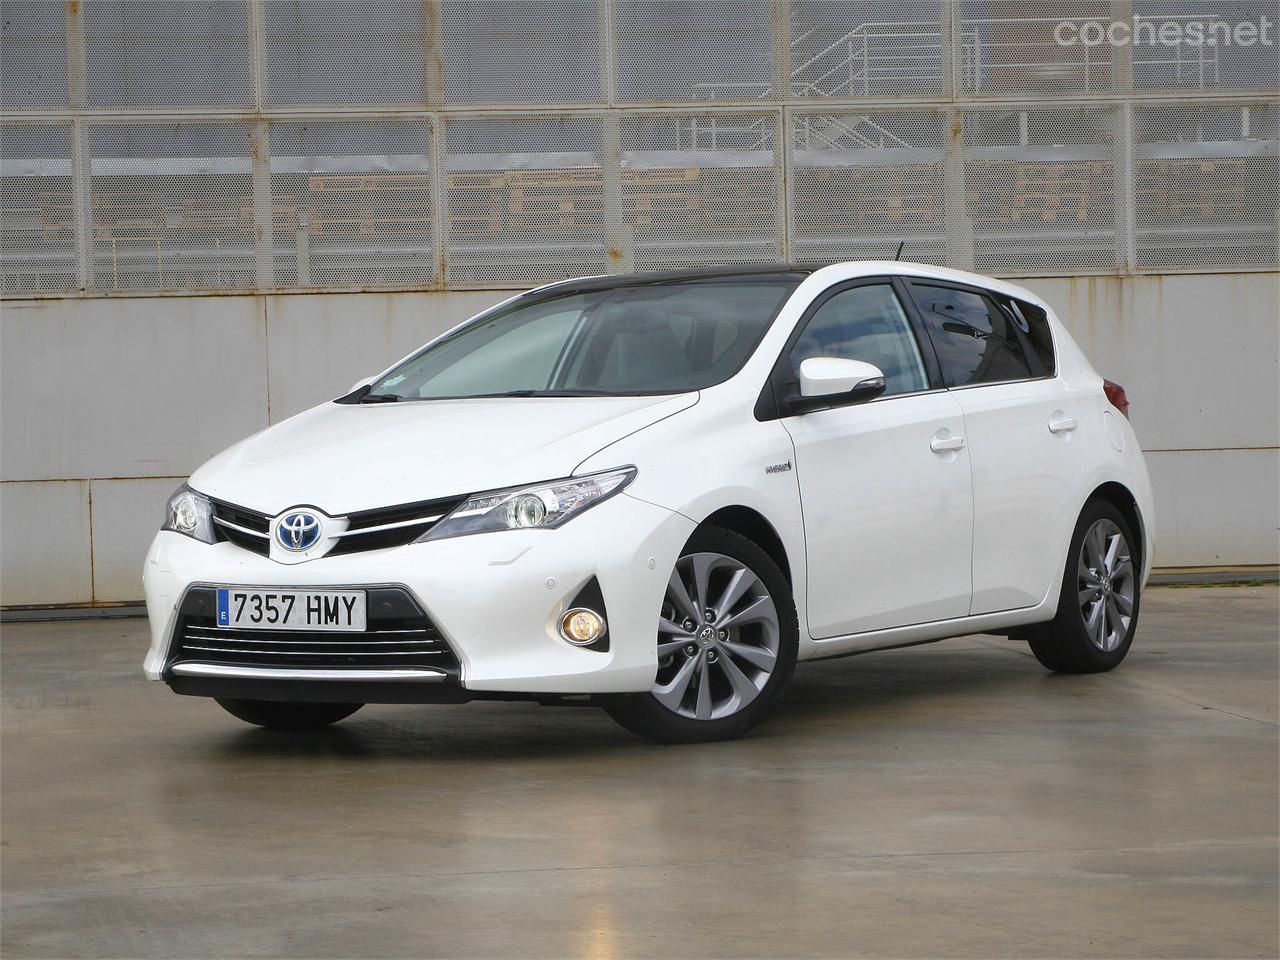 Nuevo Toyota Auris: La nueva generación de coches híbridos